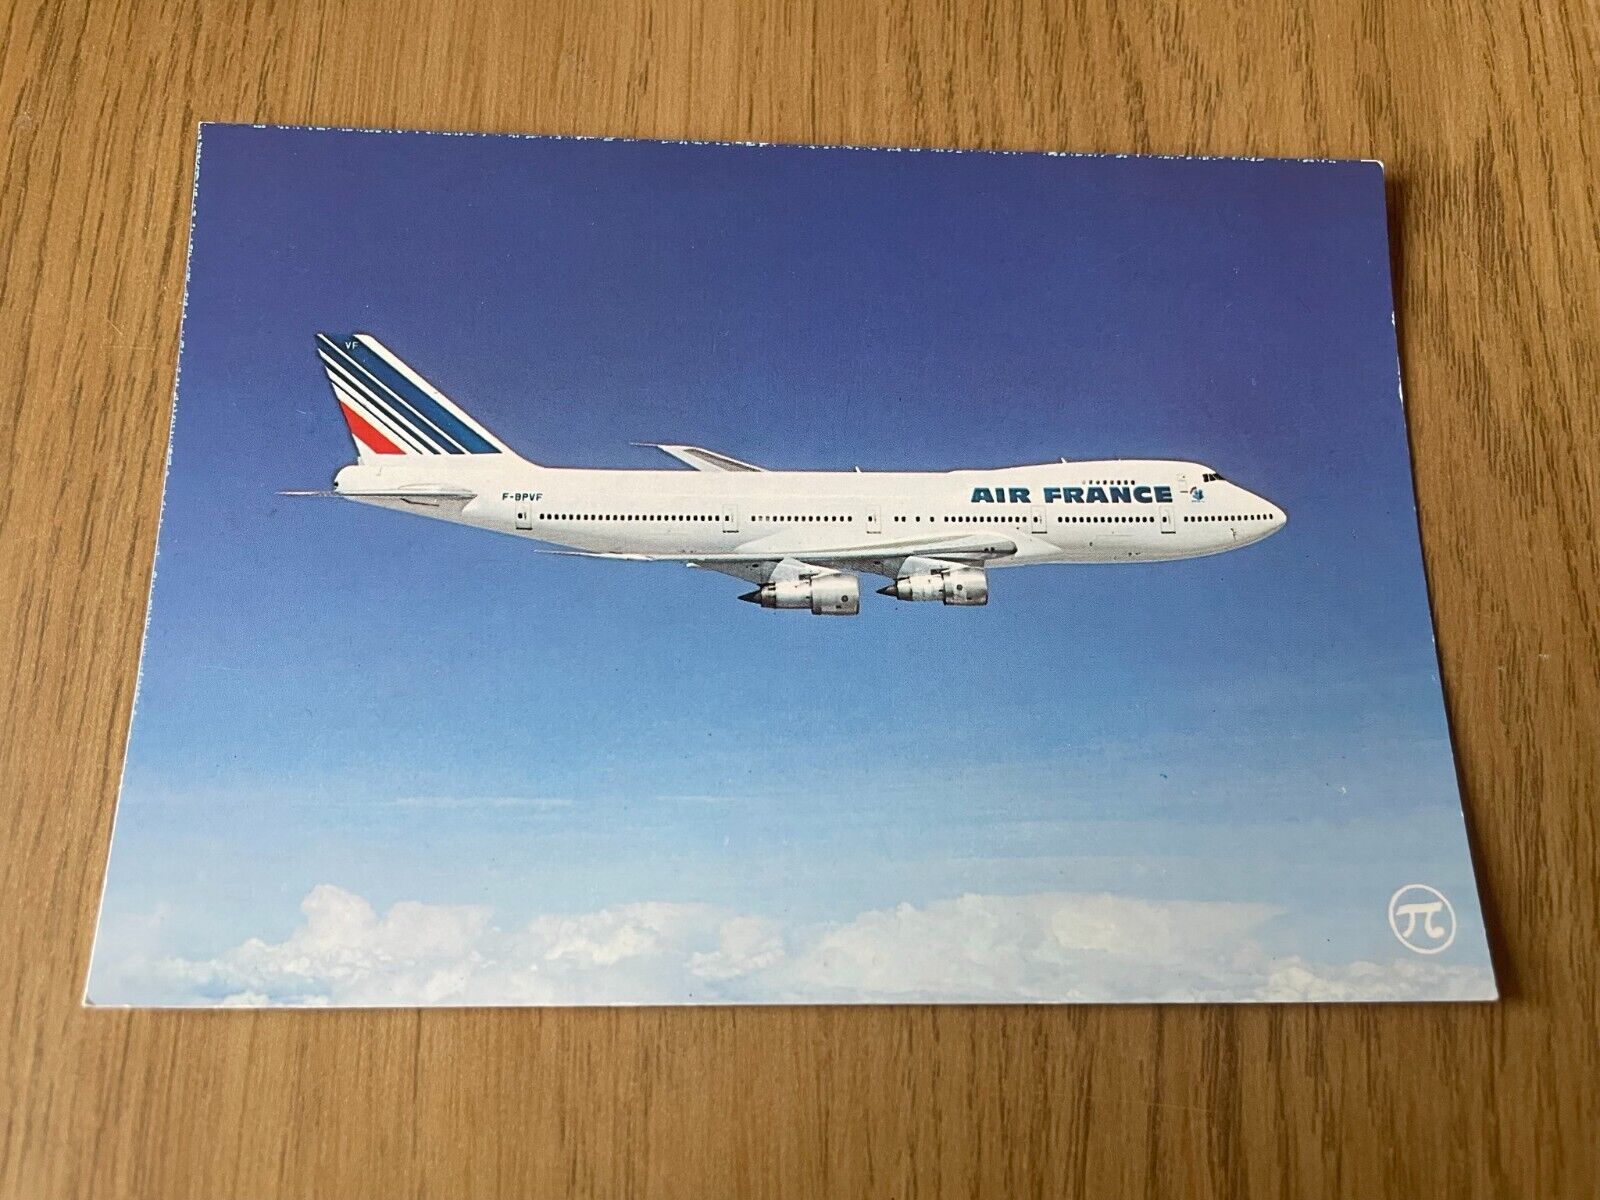 Air France Boeing 747-100 aircraft postcard